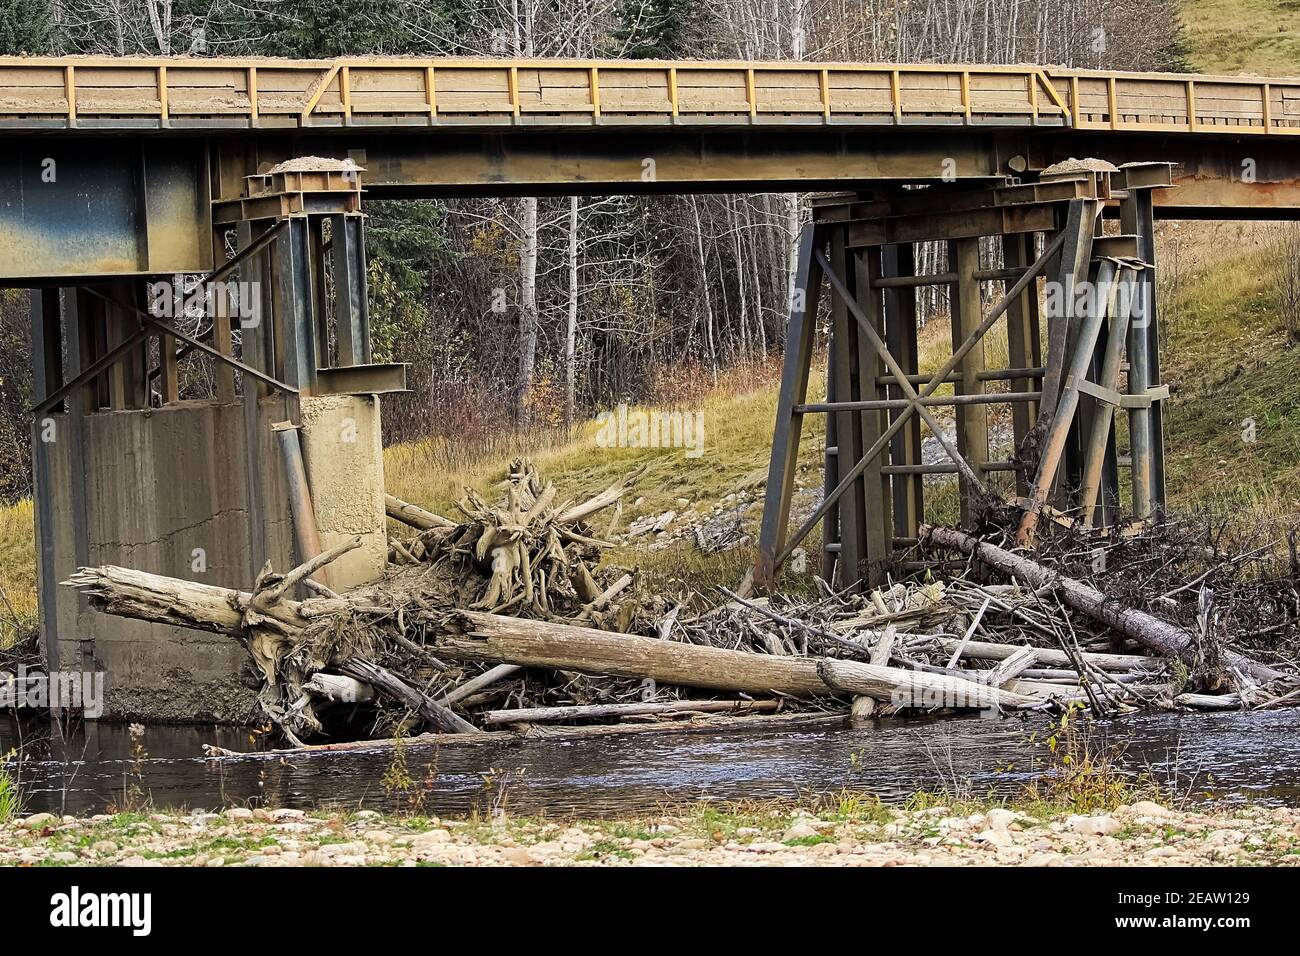 Des tas de bois flotté se ramassant à la base d'un pont Banque D'Images